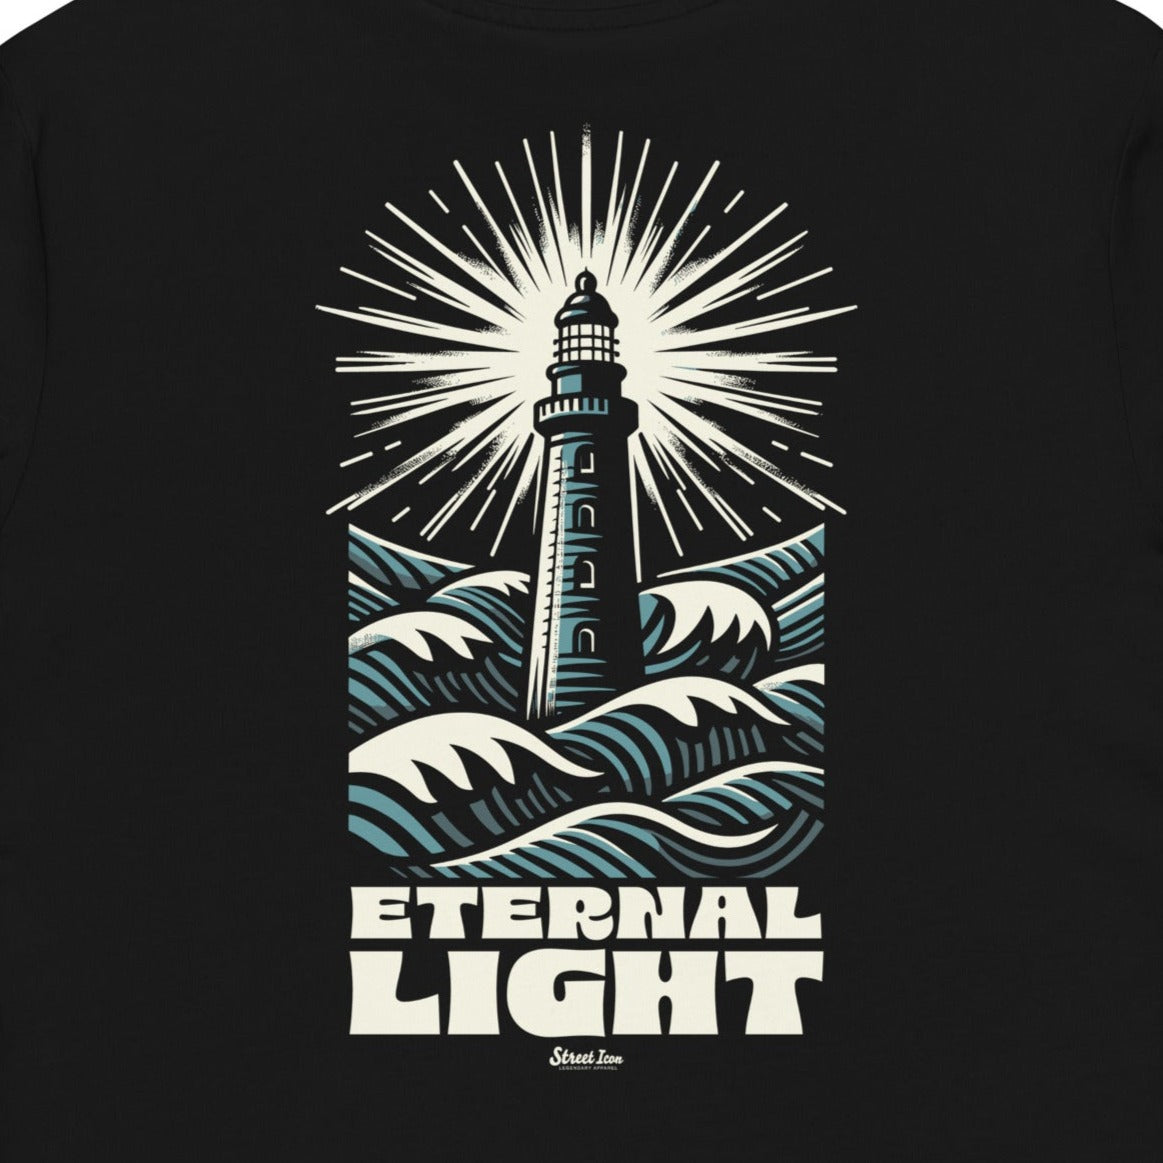 Eternal Light - Premium T-Shirt mit Backprint